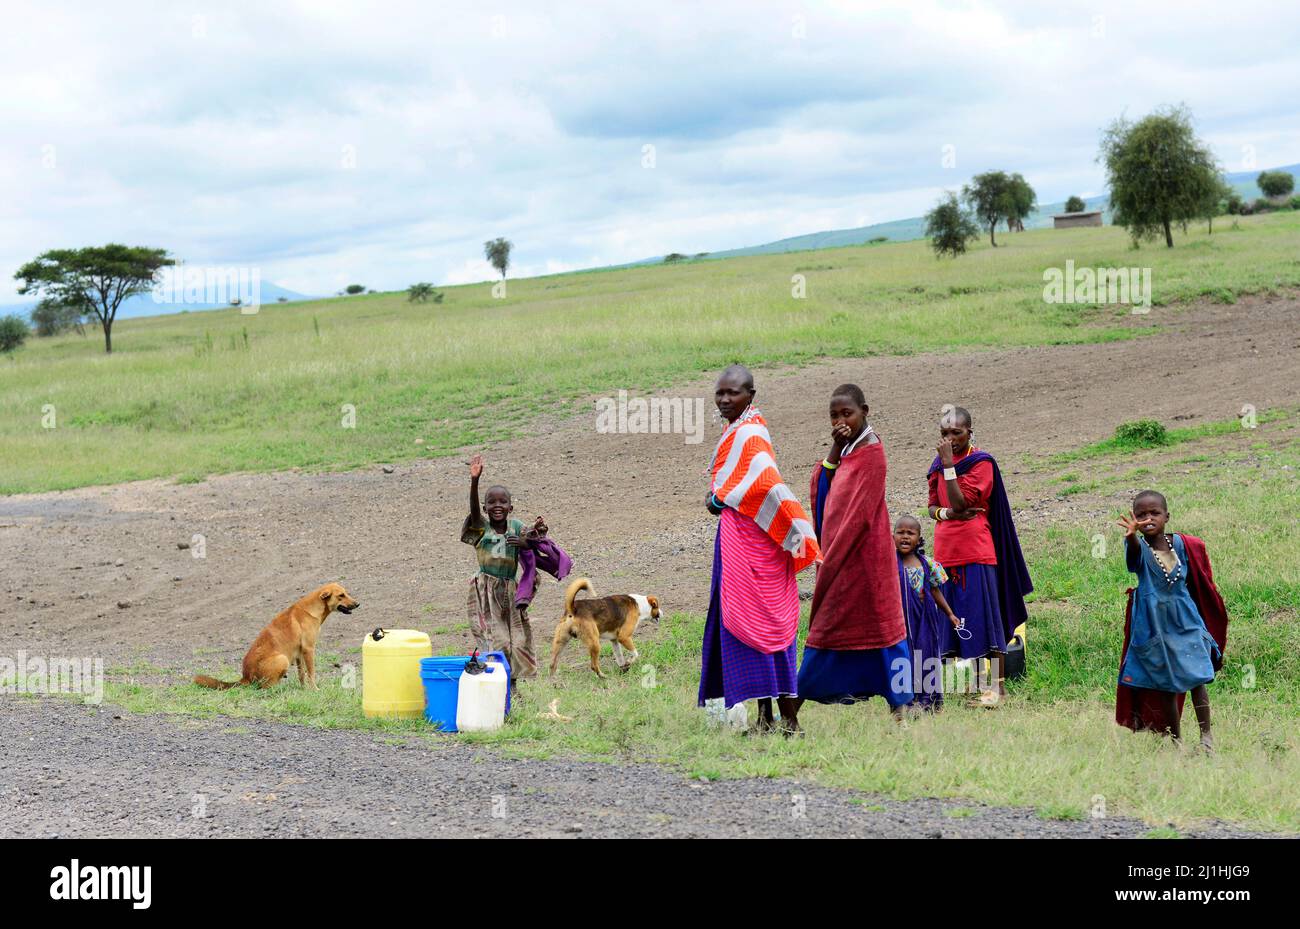 Maasai people in the Arusha region in northern Tanzania. Stock Photo